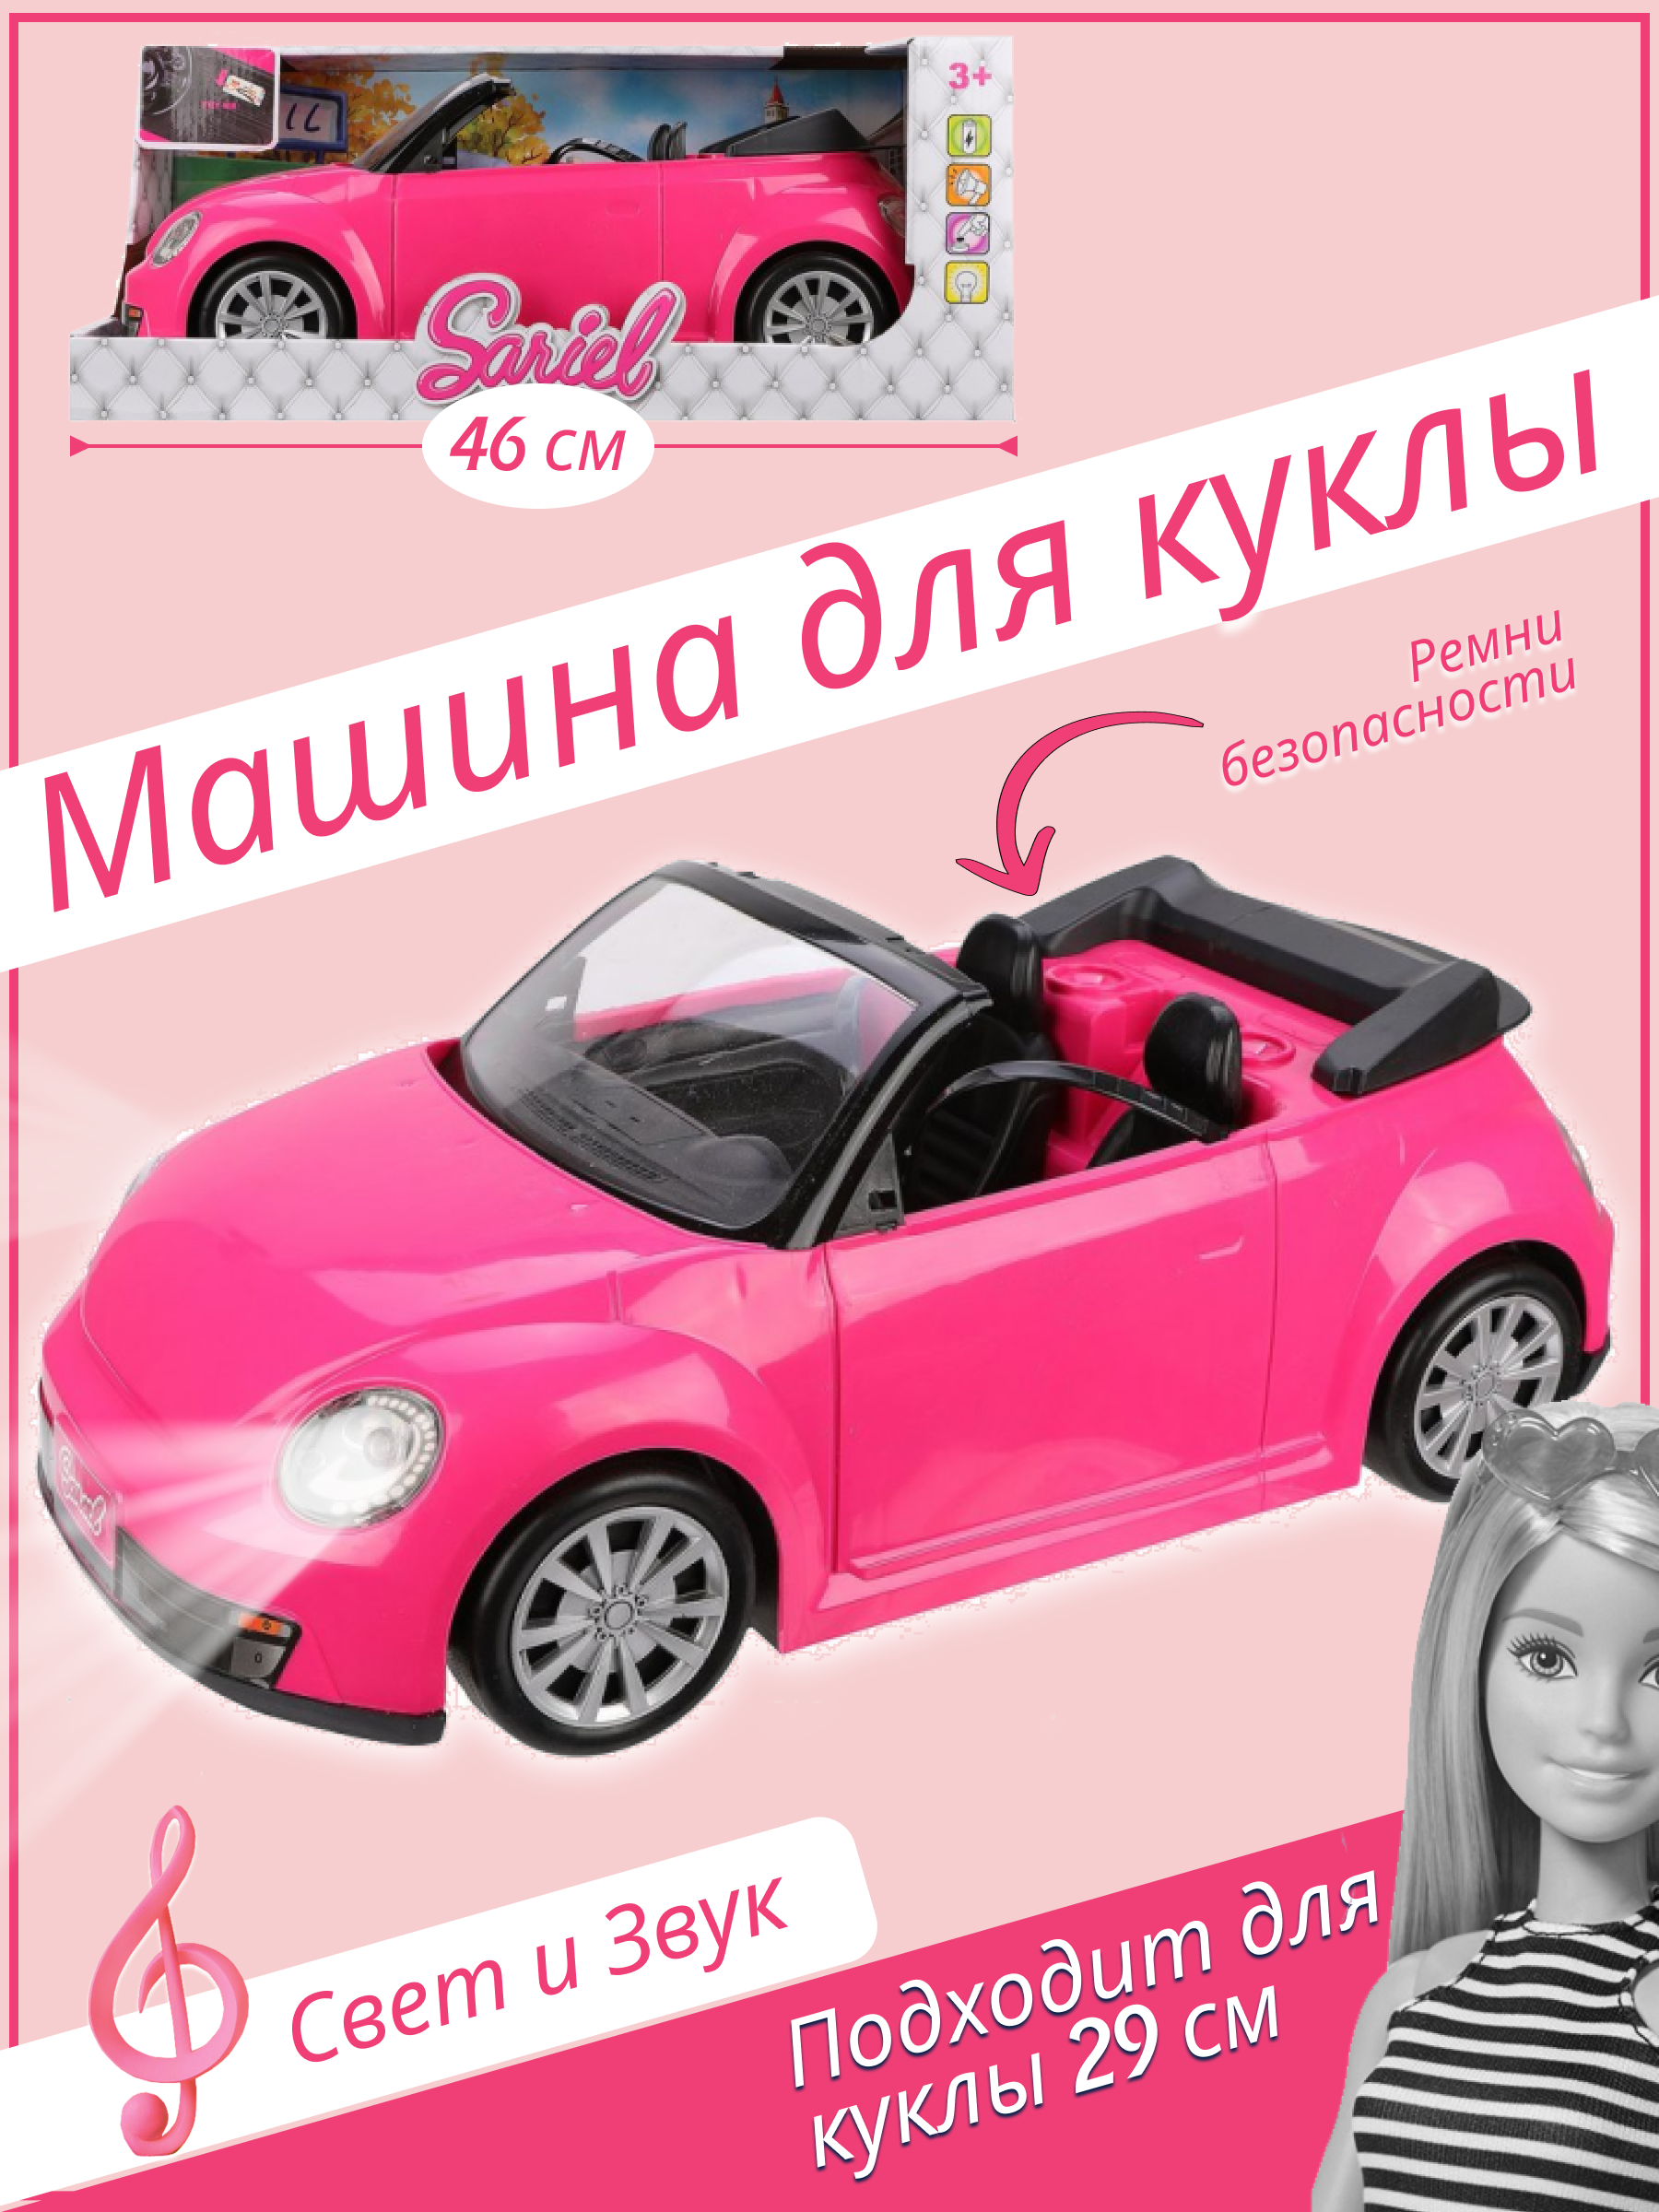 Машина кабриолет для куклы ростом 29 см, длина автомобиля 43 см, свет, звук, 6622-A